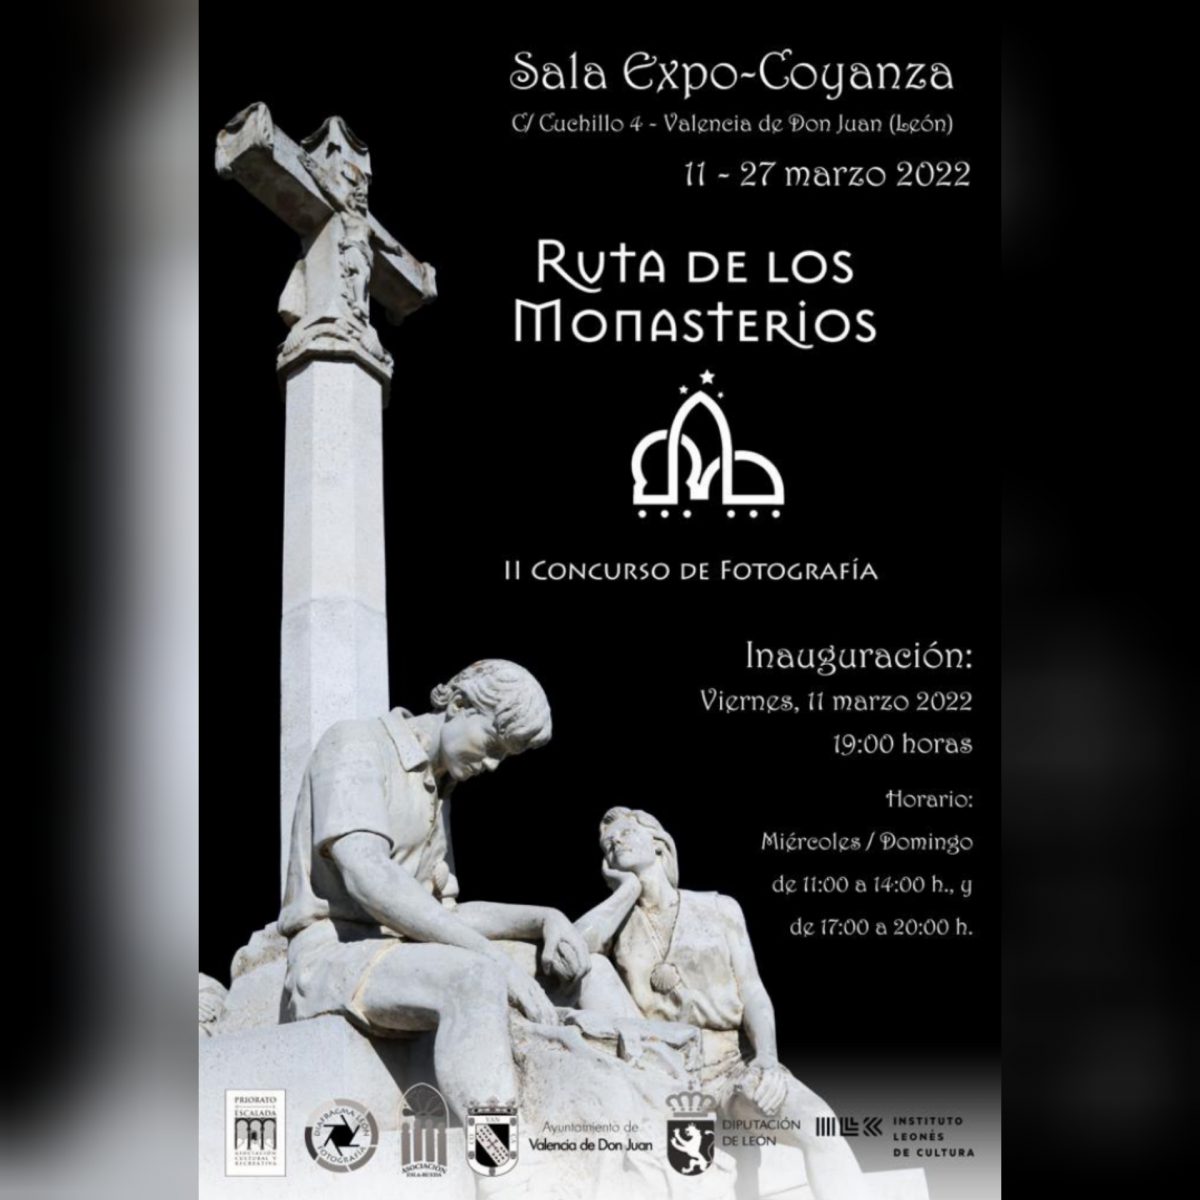 ExpoCoyanza-Exposición-Ruta-De-Los-Monasterios-Marzo-2022-1